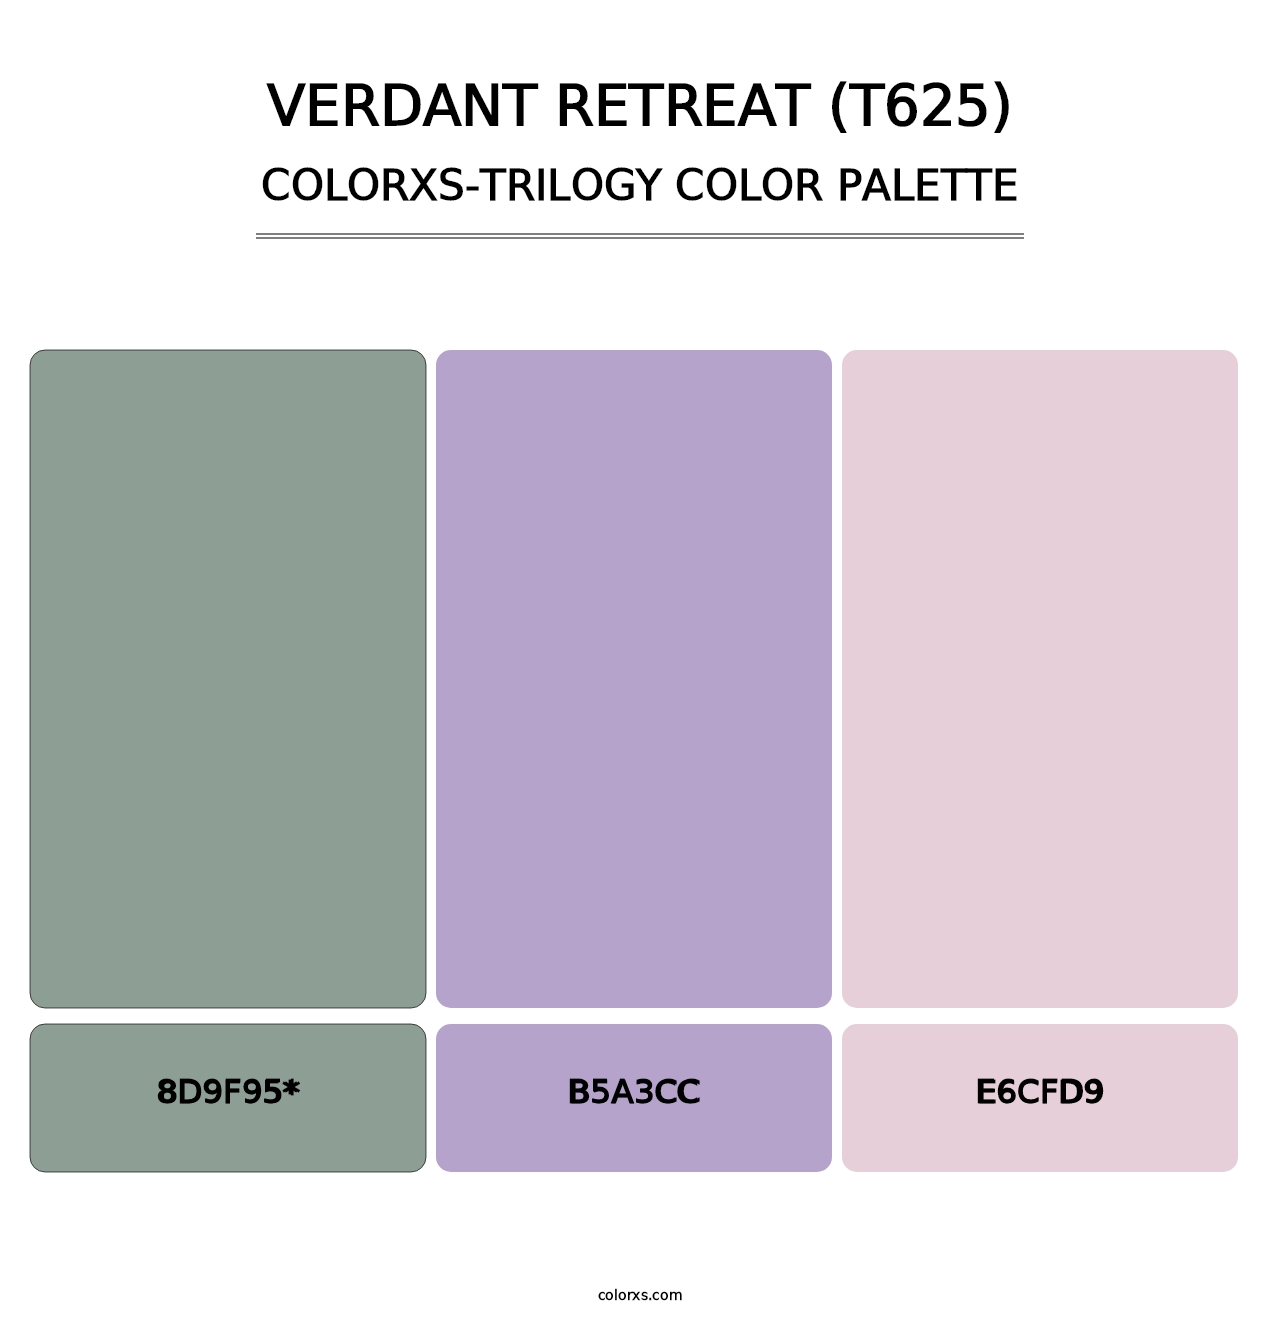 Verdant Retreat (T625) - Colorxs Trilogy Palette